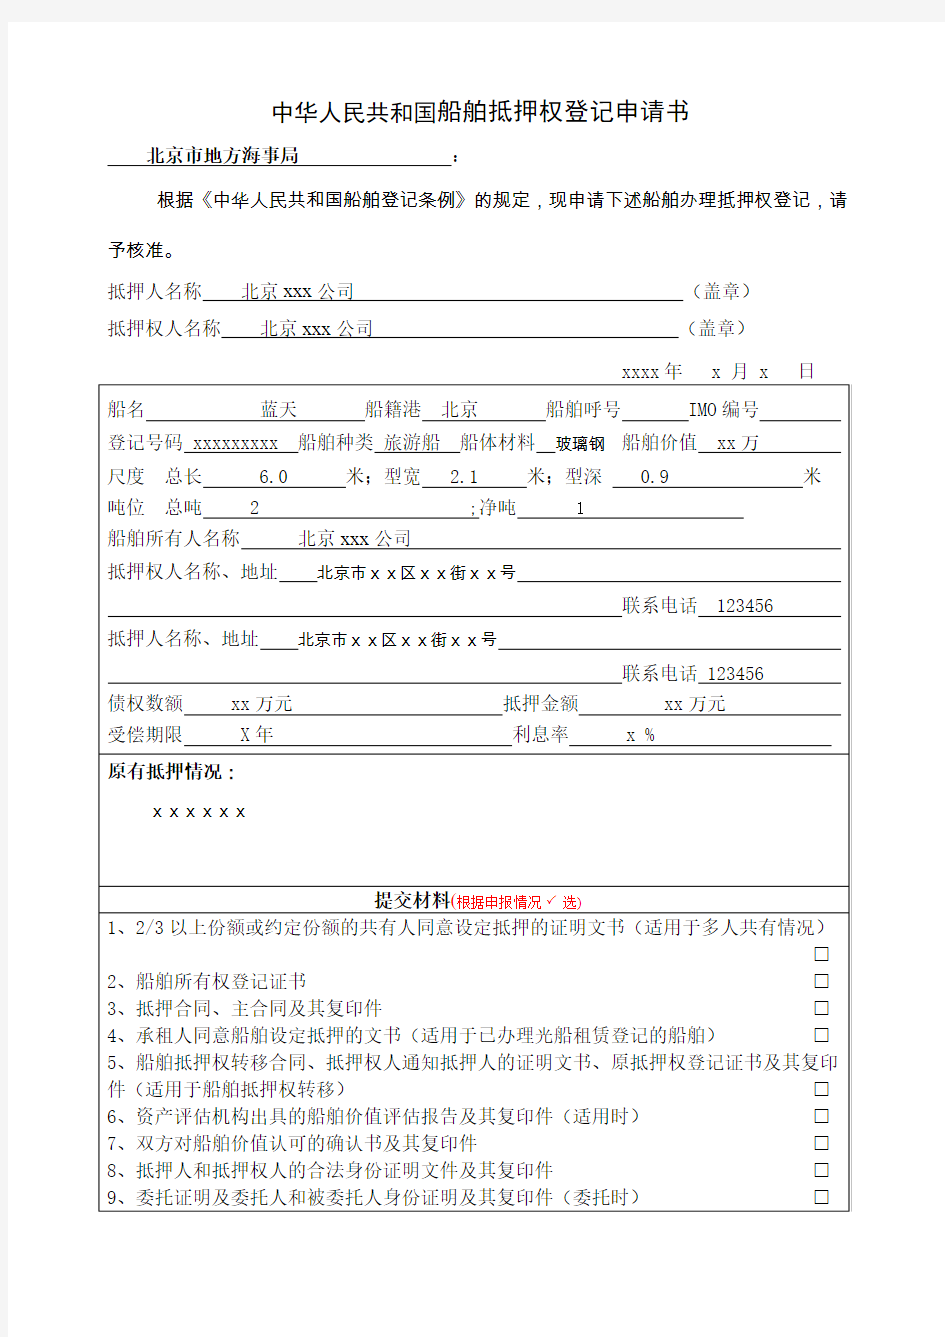 中华人民共和国船舶抵押权登记申请书